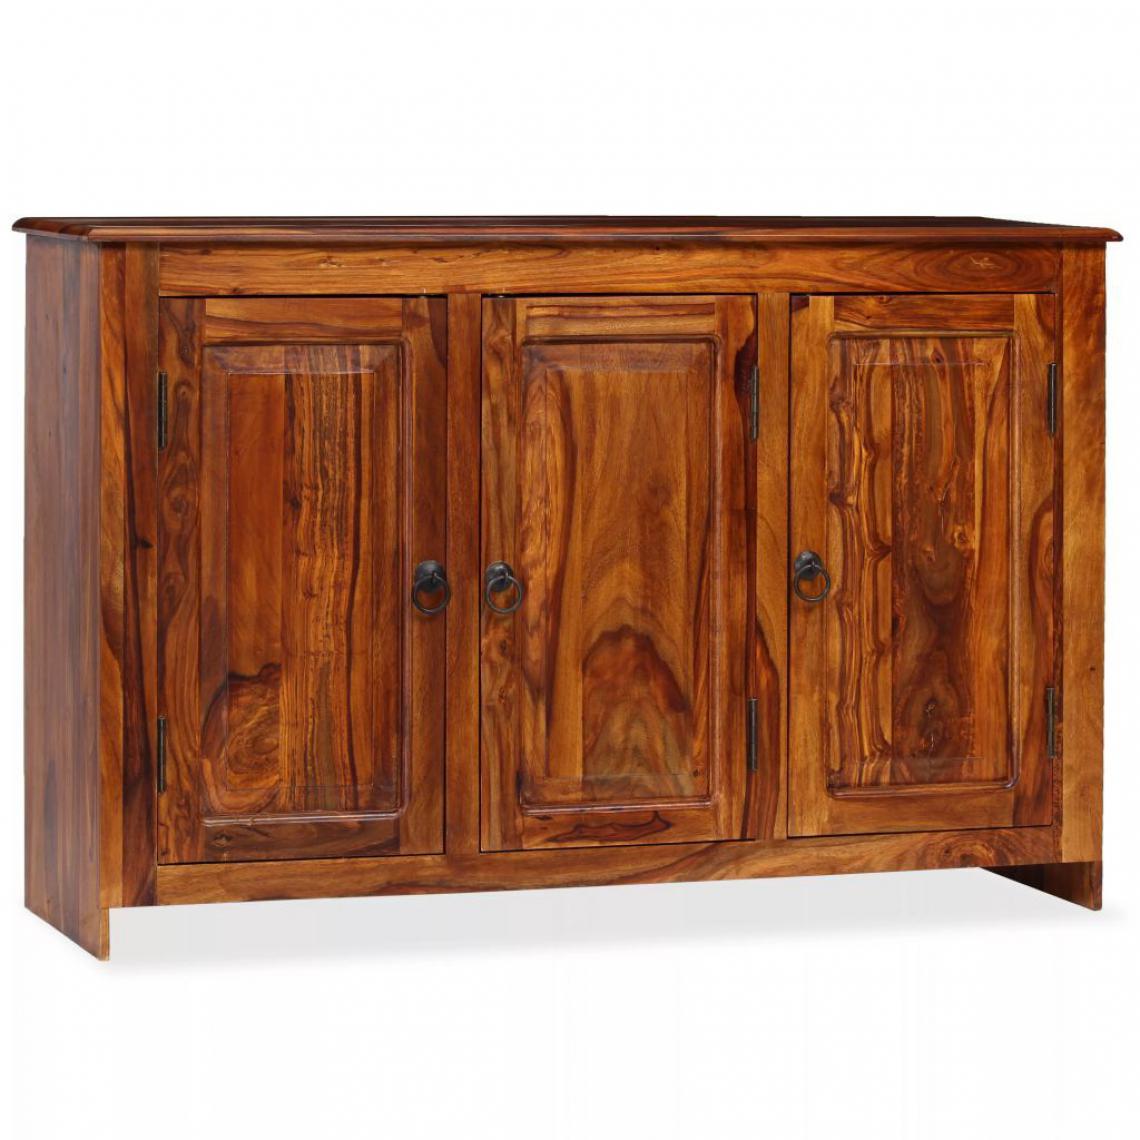 Helloshop26 - Buffet bahut armoire console meuble de rangement bois massif de sesham 115 cm 4402031 - Consoles